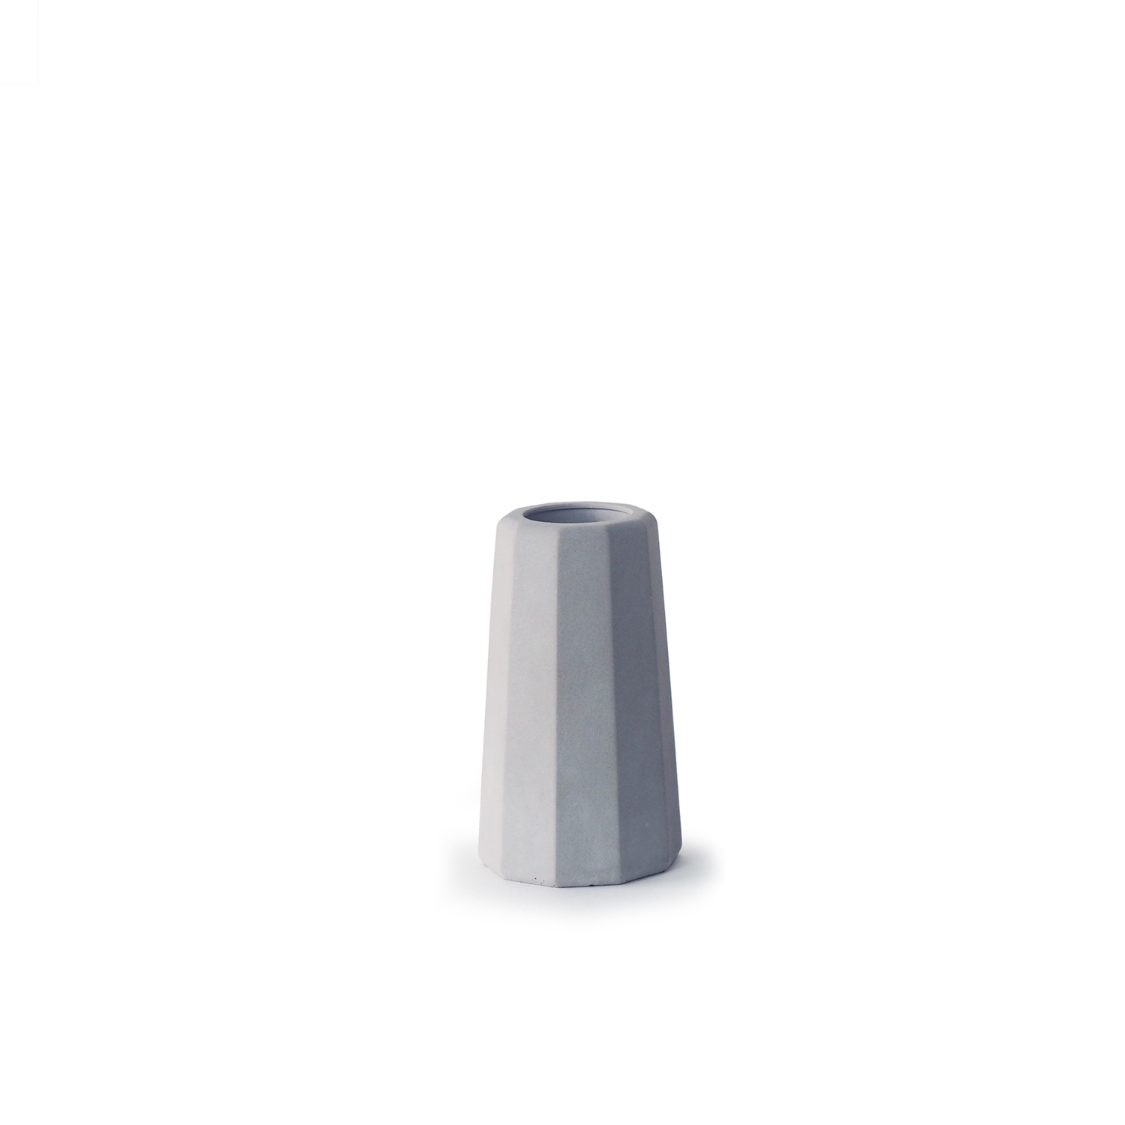 Un petit vase en béton gris clair surface facettes